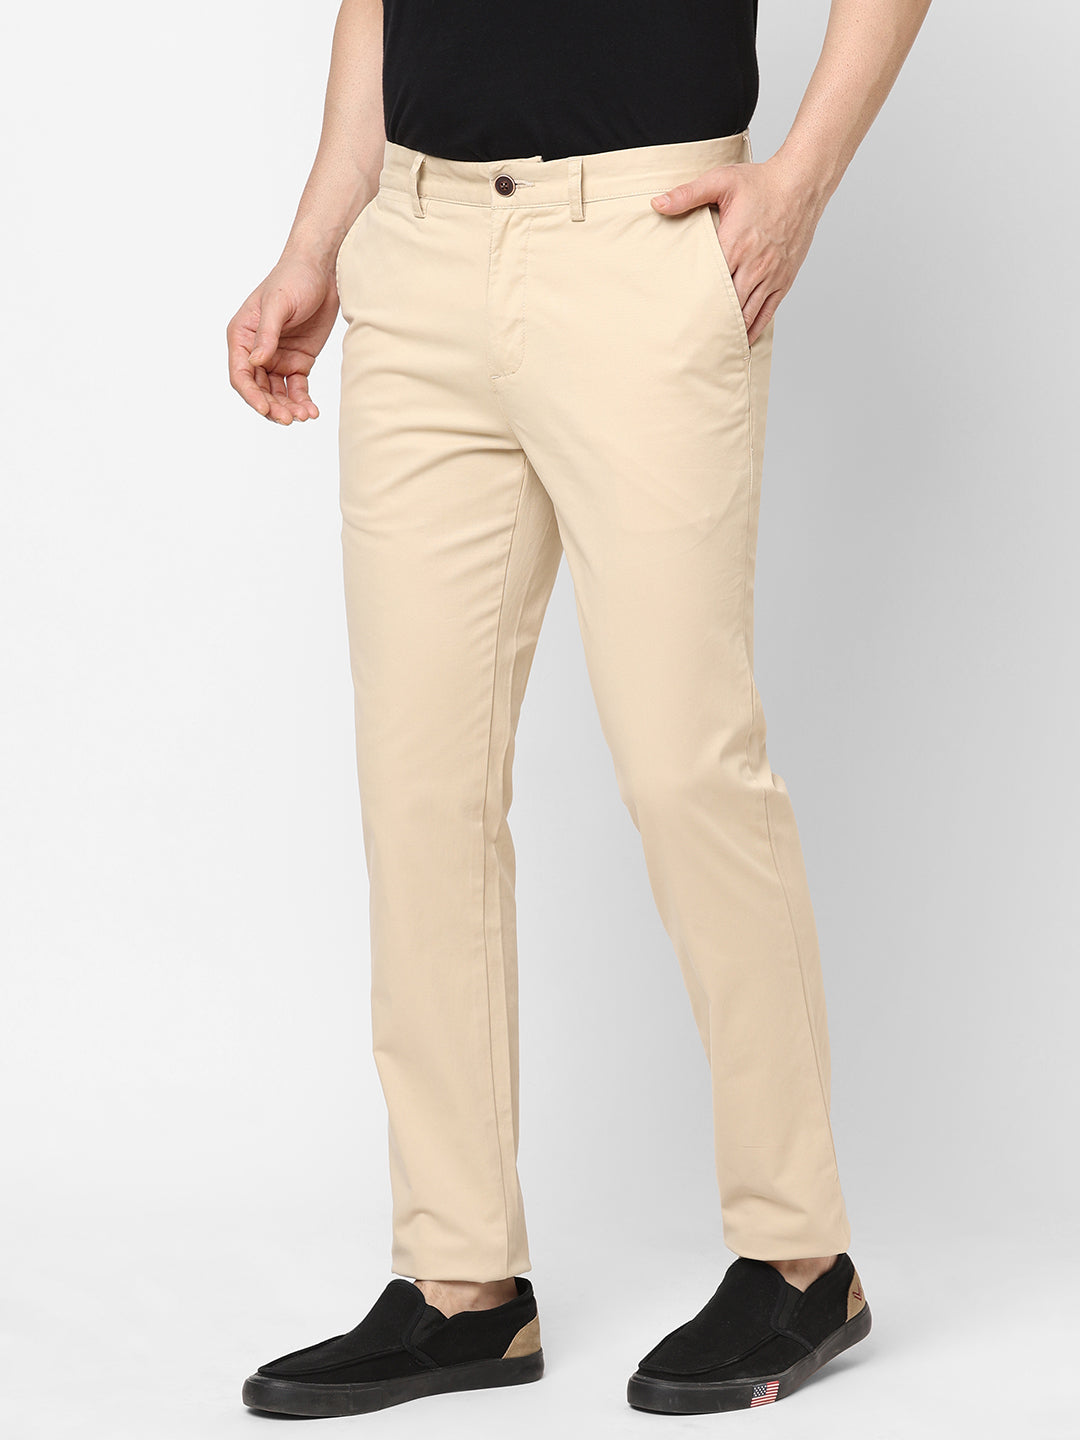 Men's Beige Cotton Lycra Slim Fit Pant